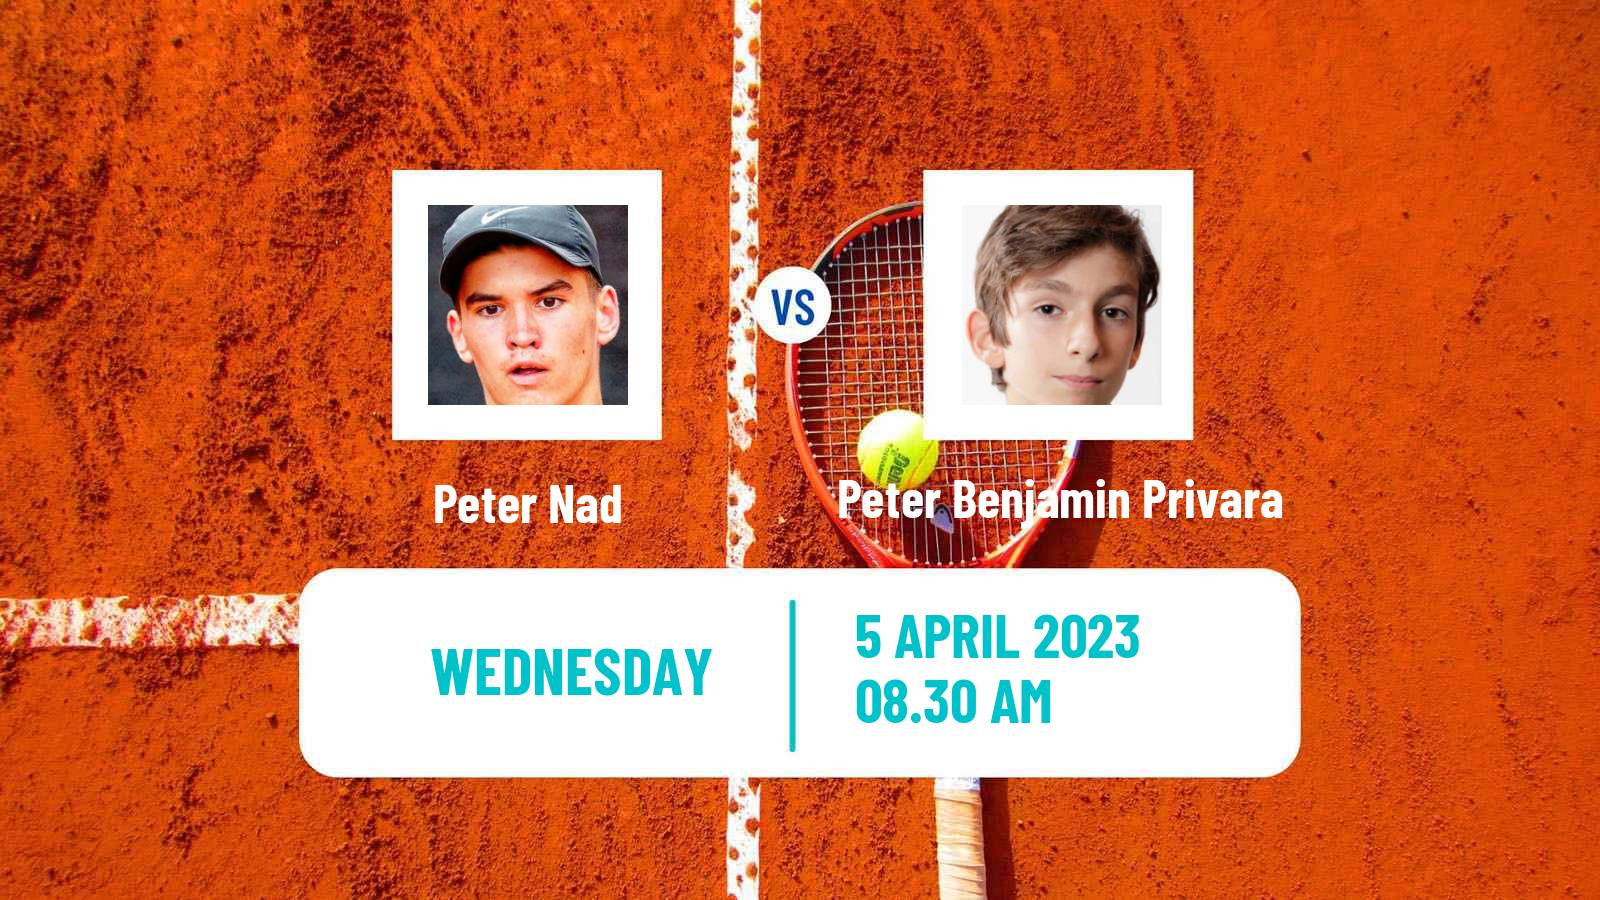 Tennis ITF Tournaments Peter Nad - Peter Benjamin Privara